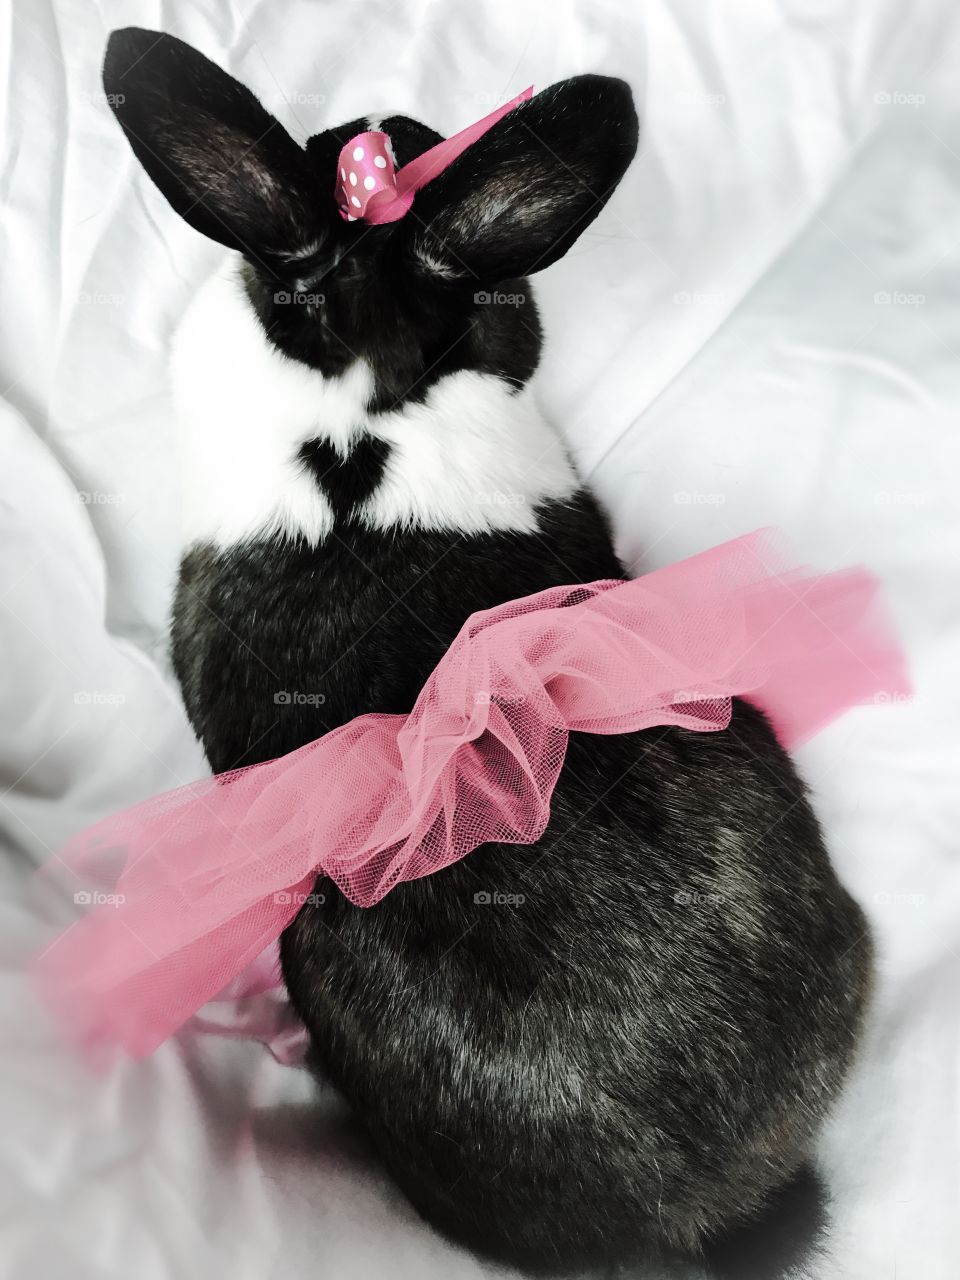 Heart of a cute bunny